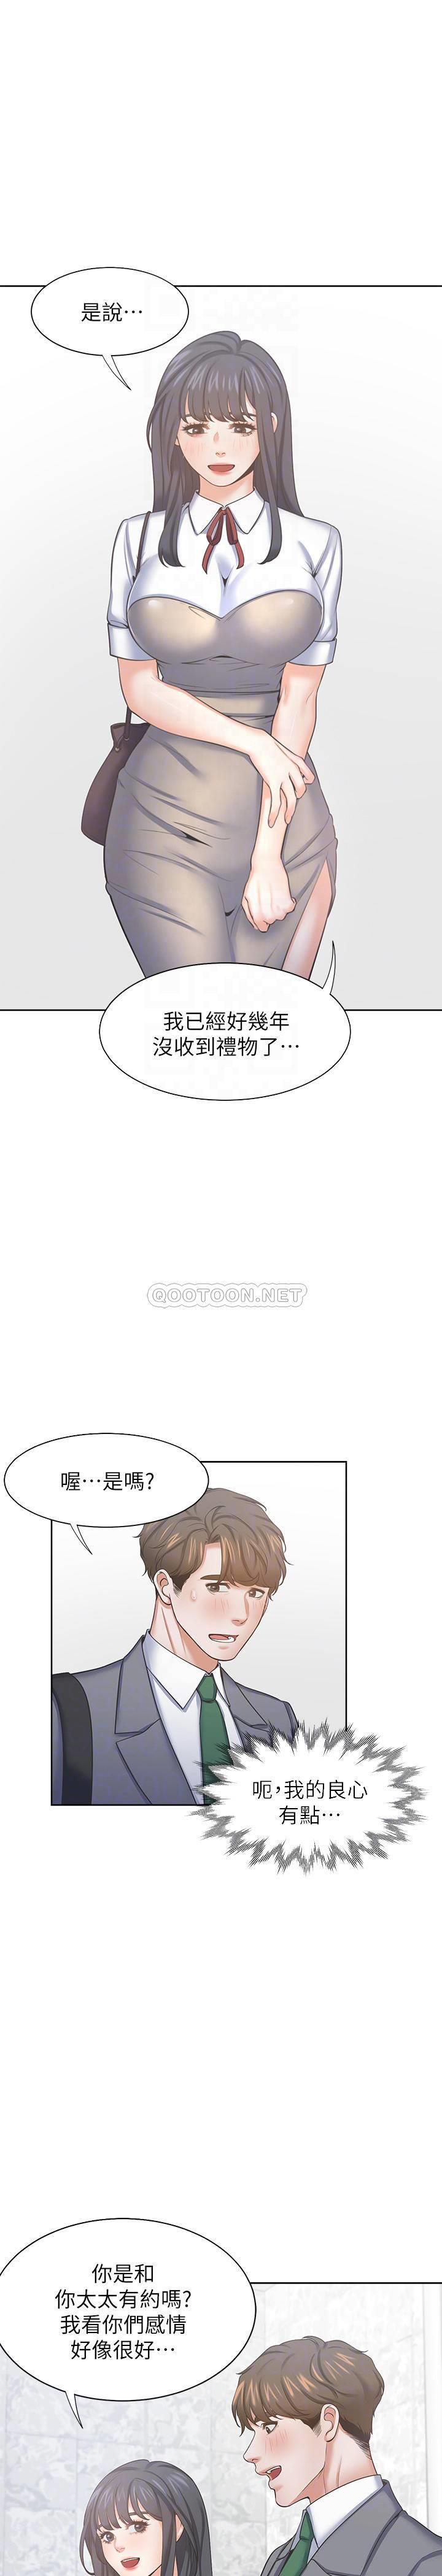 韩国污漫画 愛火難耐 第37话-诱惑时别看着对方眼睛 4